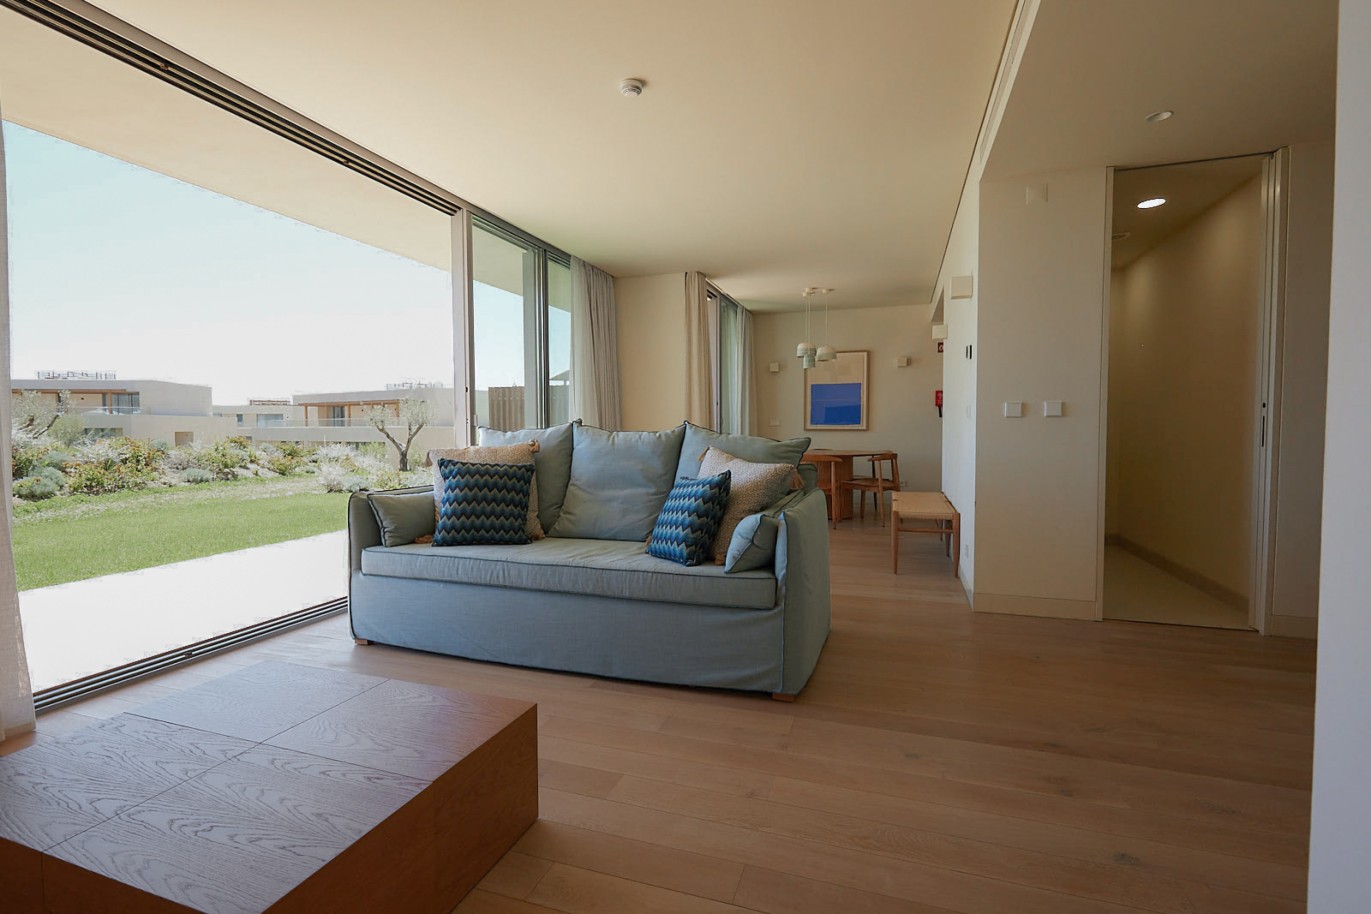 Piso de 2 dormitorios en complejo, en venta en Porches, Algarve_228830